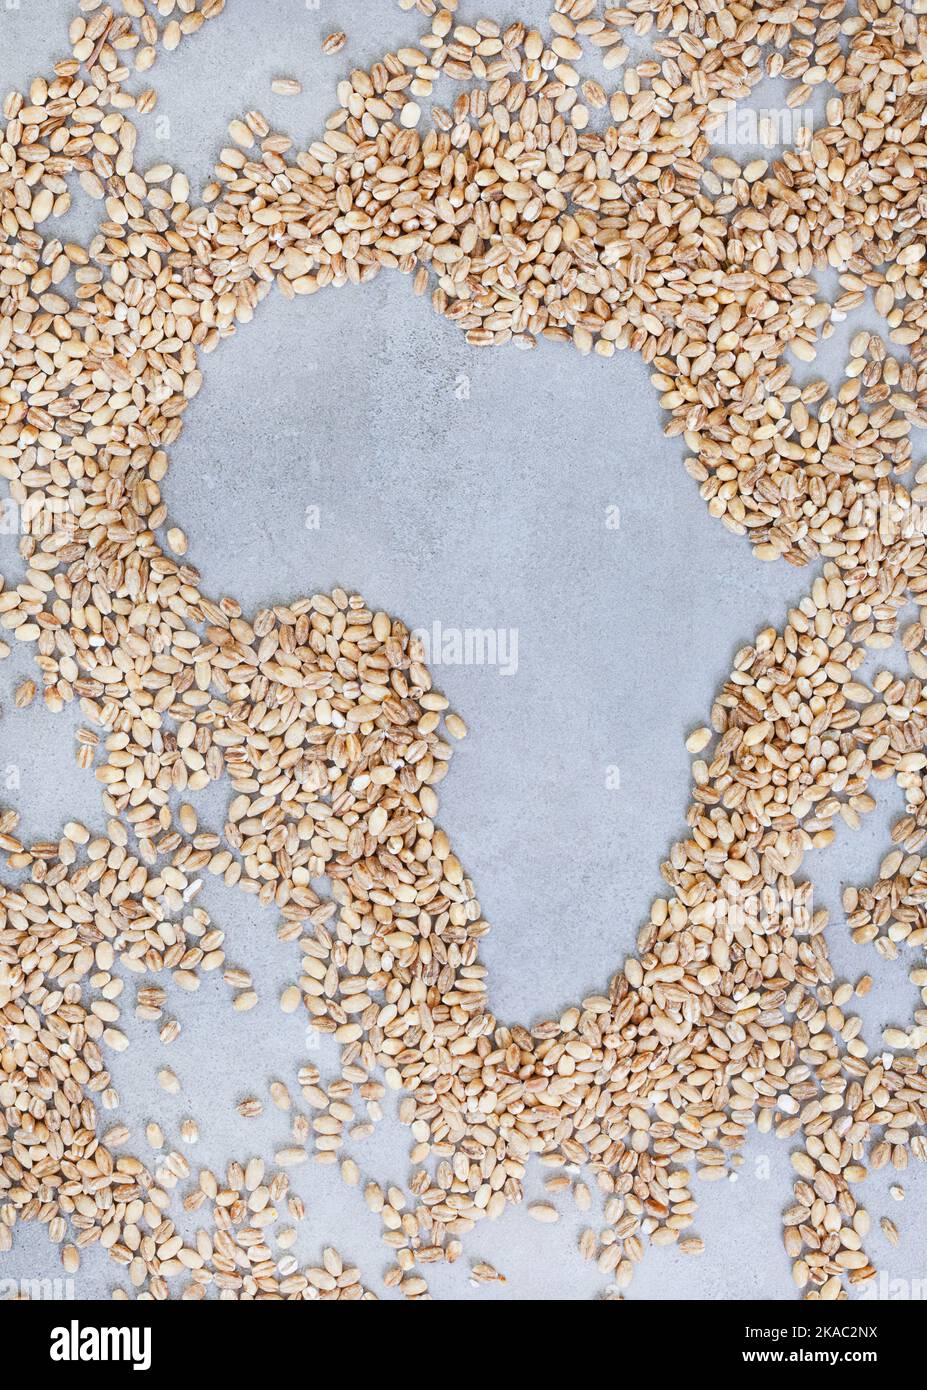 Globale Ernährungs- und Getreidekrise, afrikanischer Kontinent in Getreide auf einer melierten grauen Oberfläche geformt Stockfoto